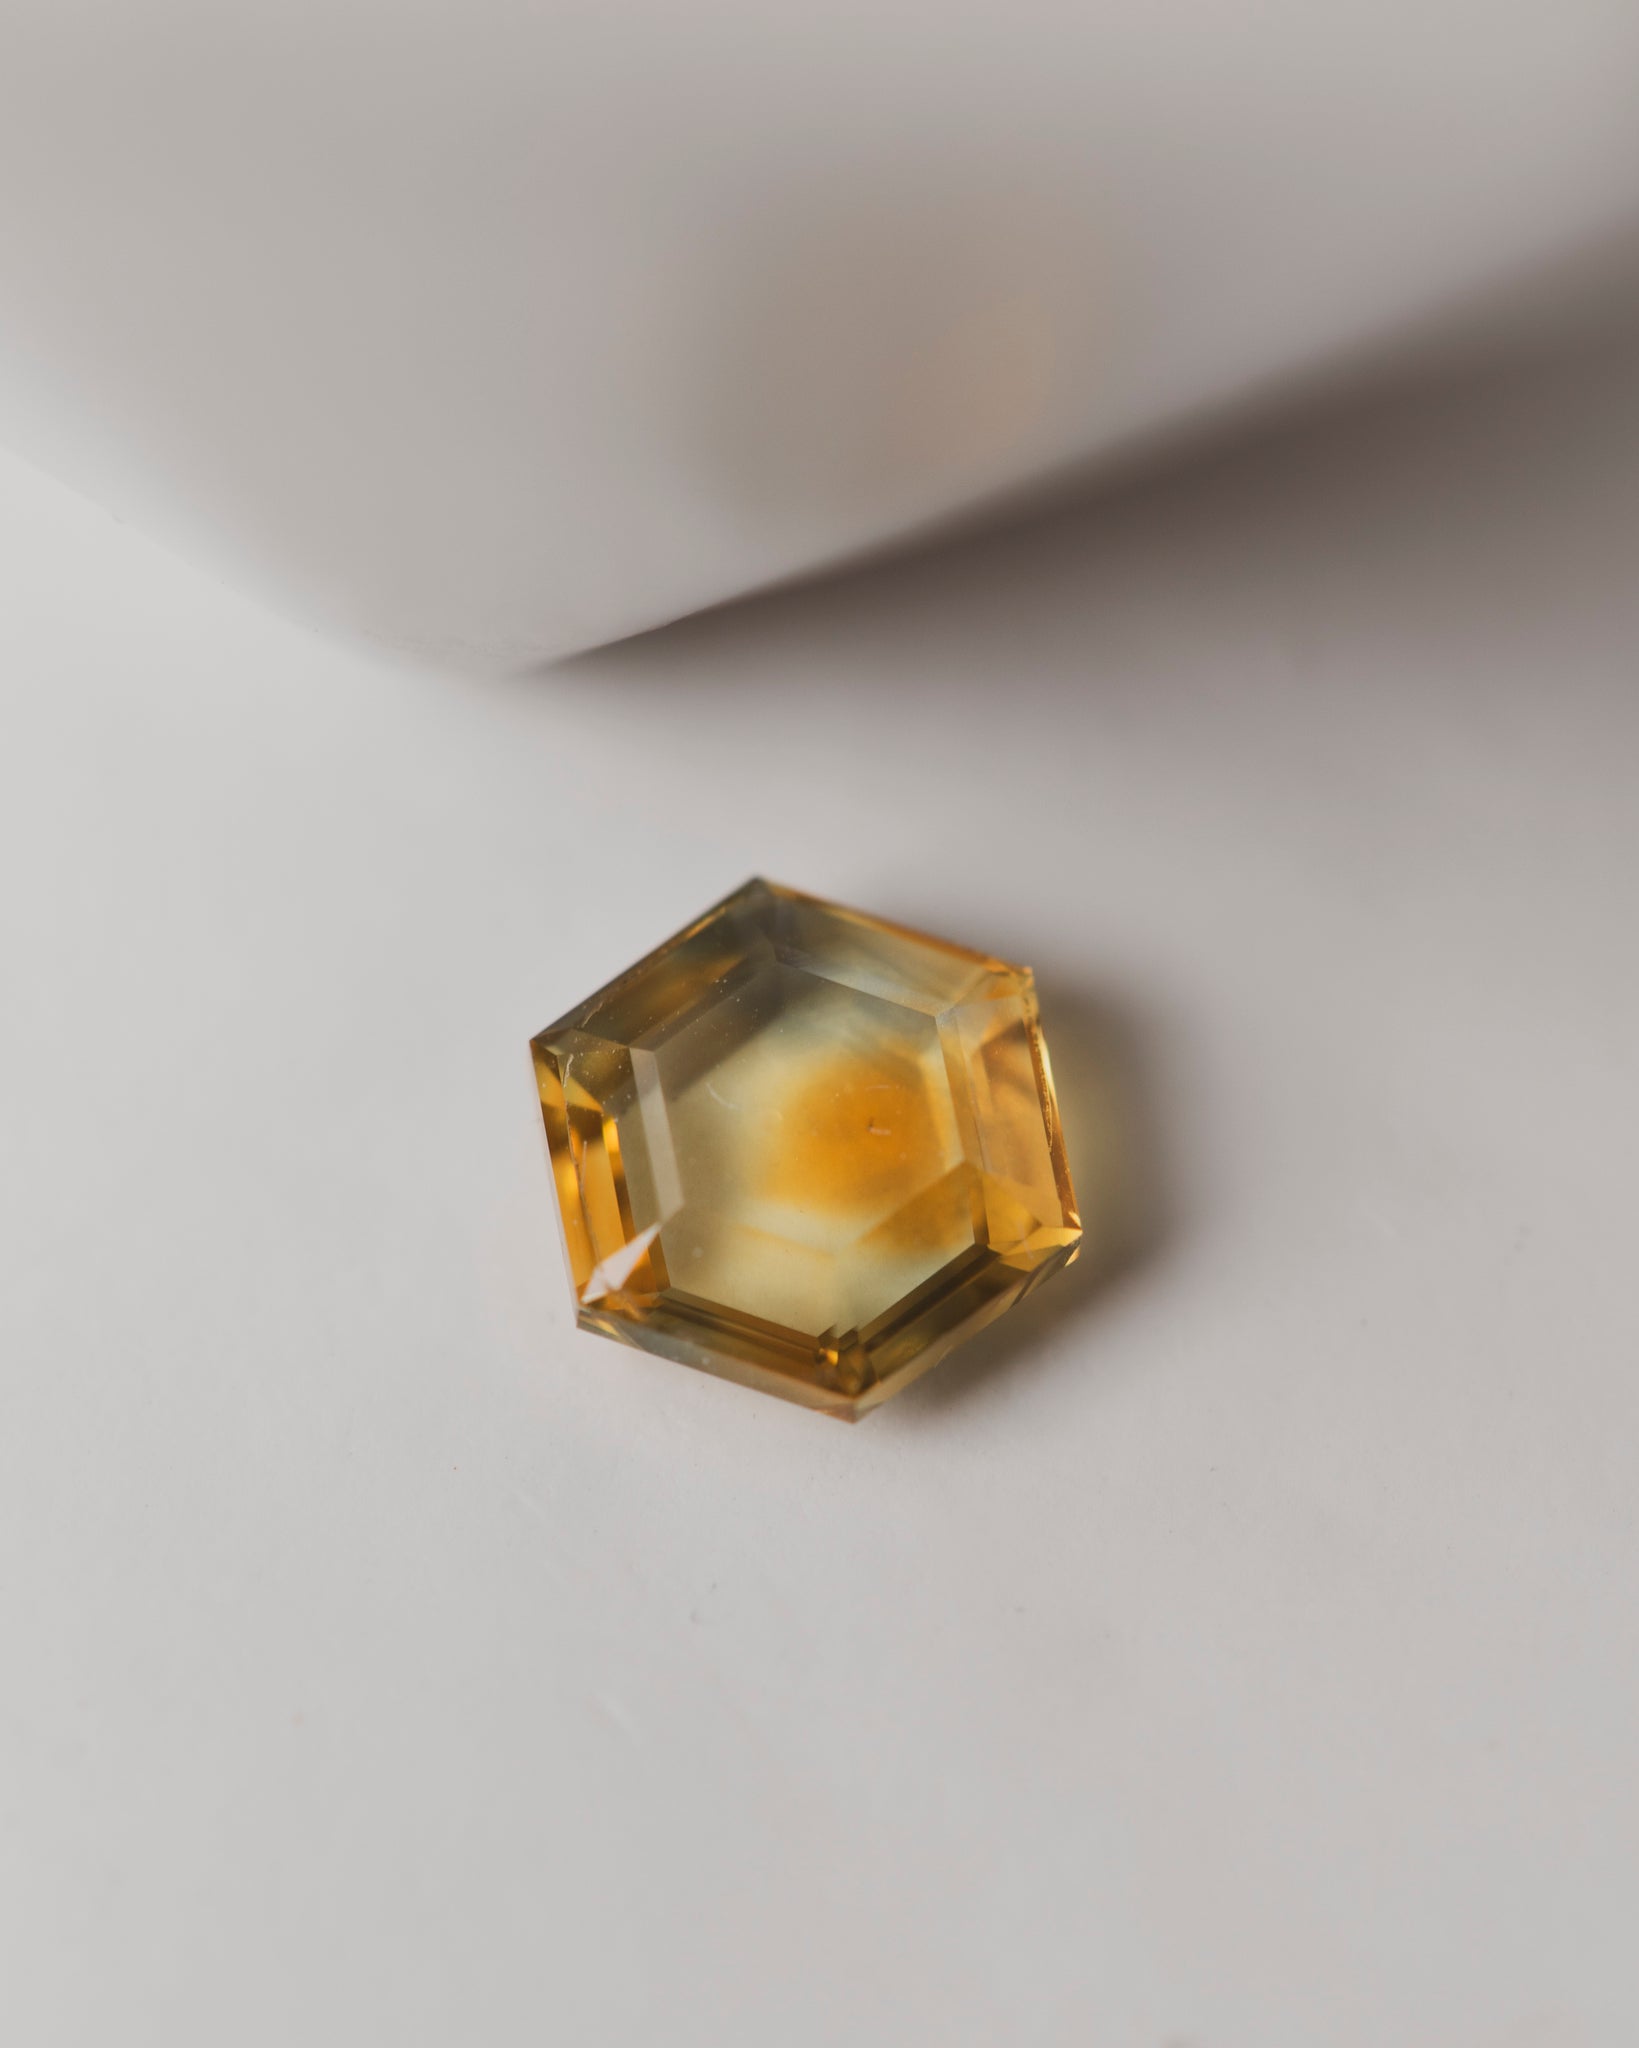 1.5 carat Yellow Hexagonal Tablet Cut Sapphire